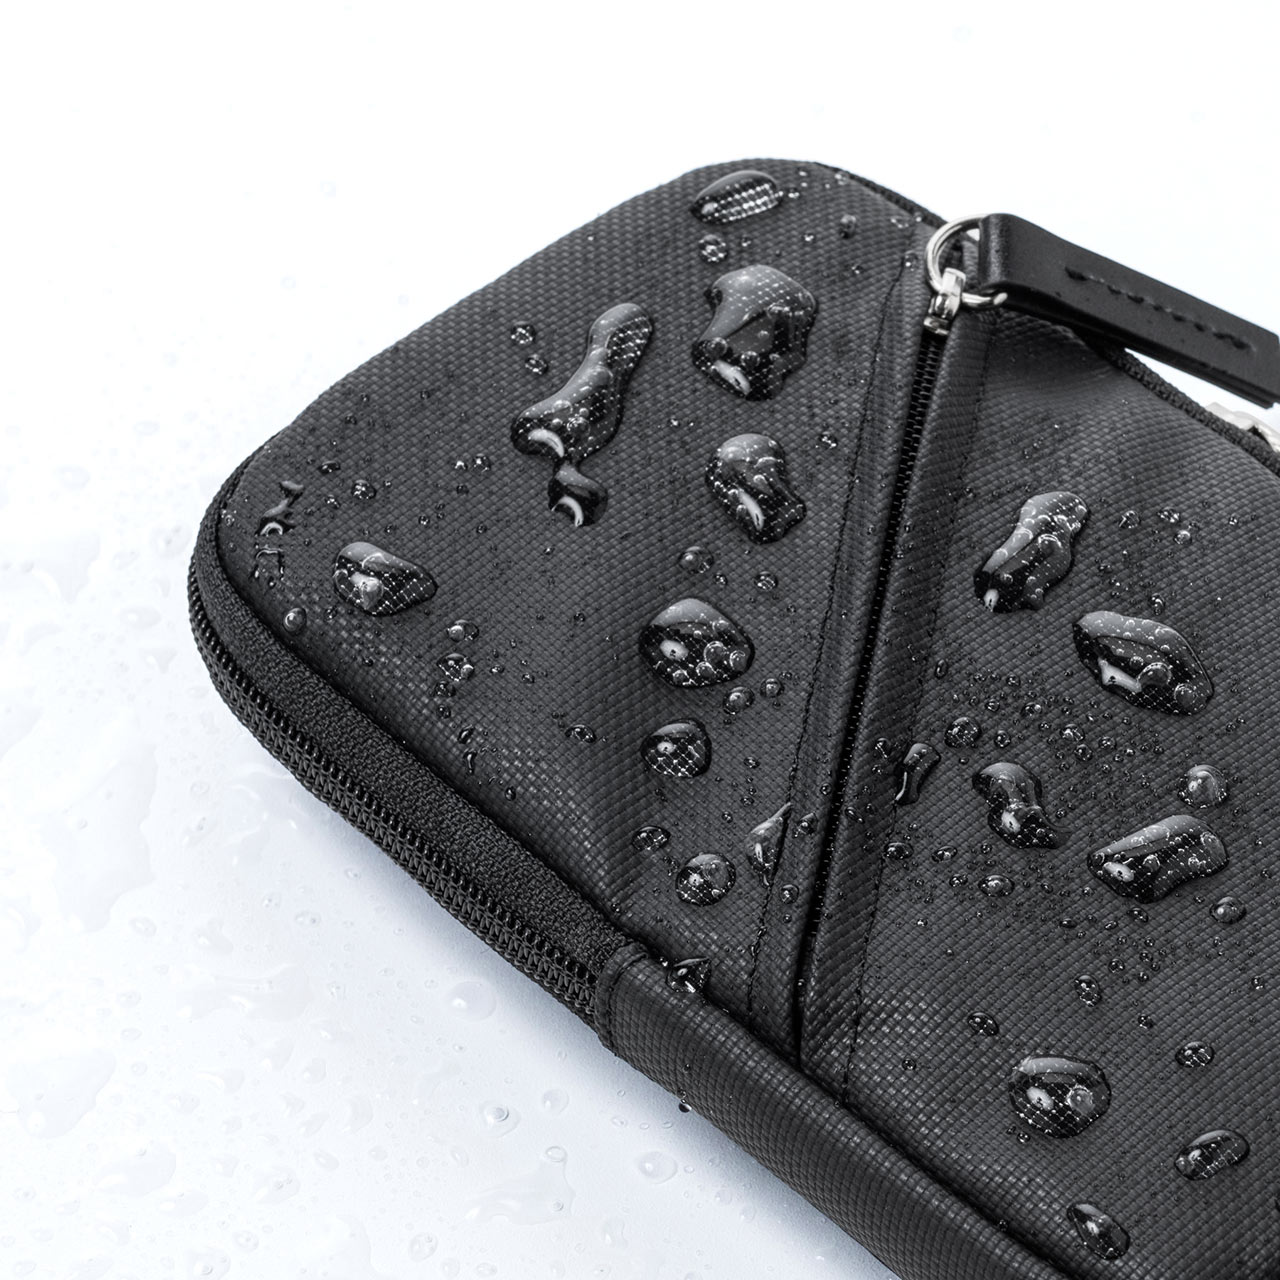 スマホポーチ バッグのベルトに装着 6.5インチ対応 耐水生地 ブラック 200-BAGOP2WP